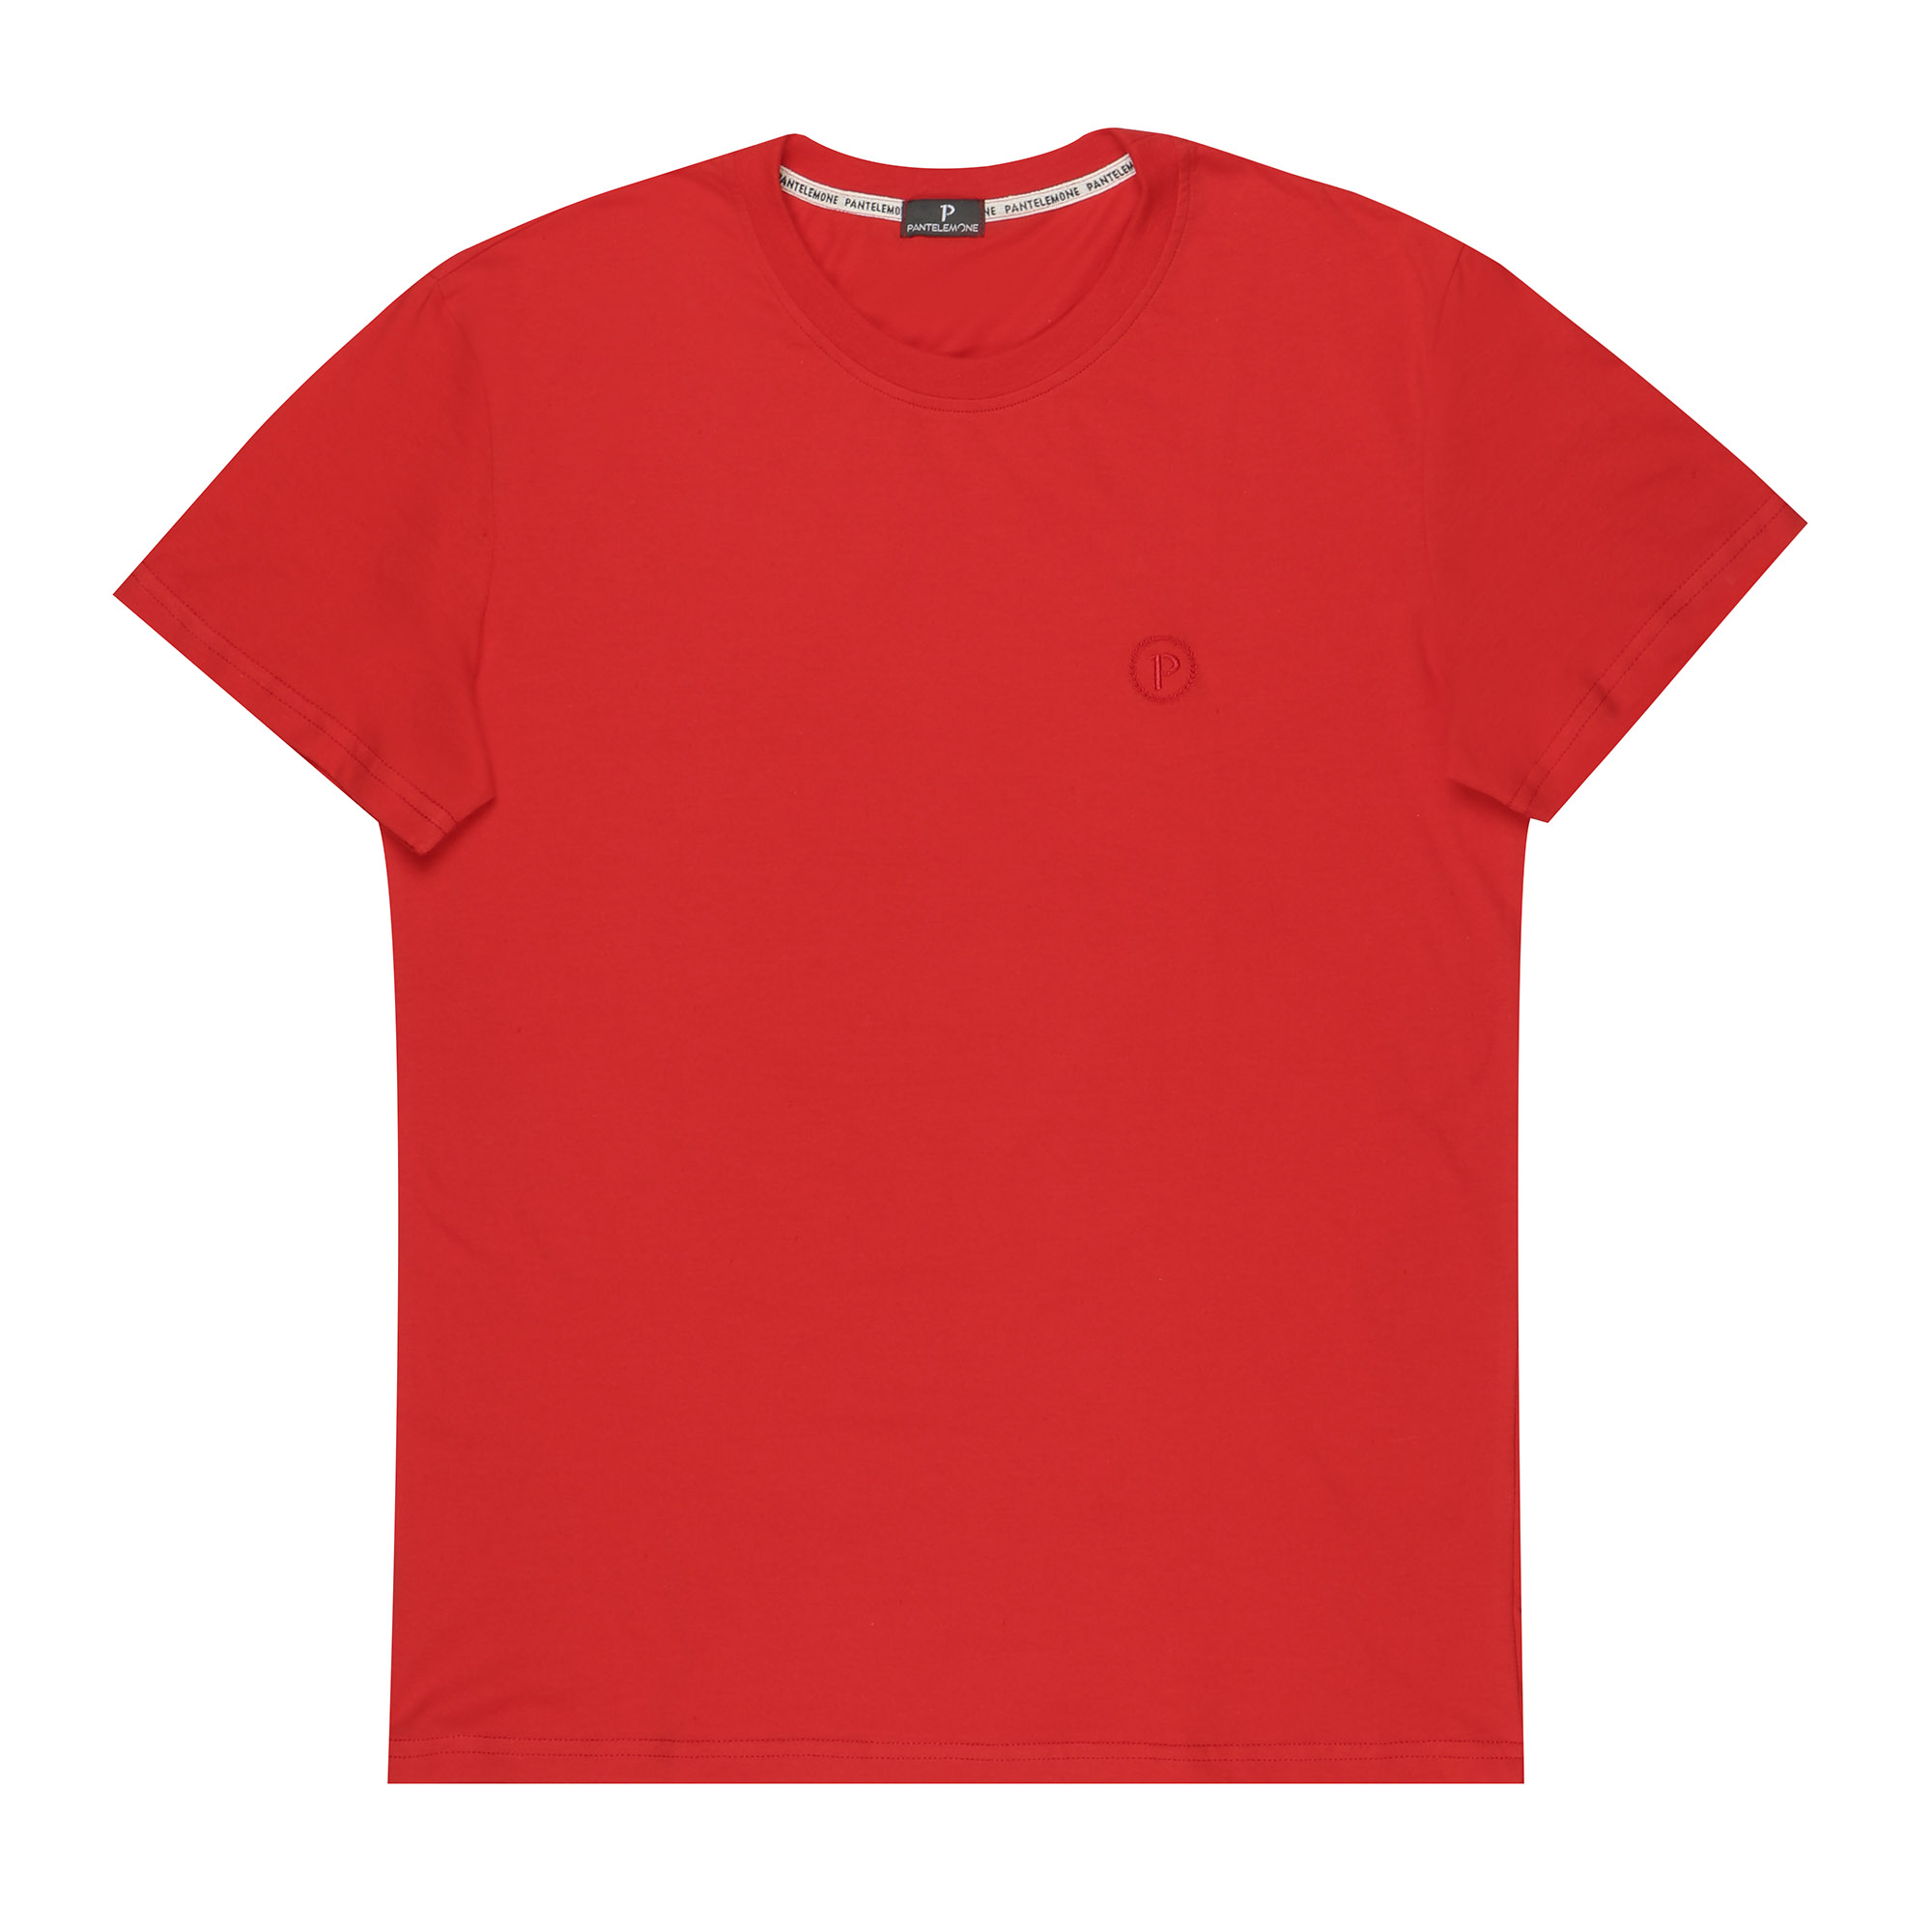 Мужская футболка Pantelemone MF-913 46 красная, цвет красный, размер 46 - фото 1